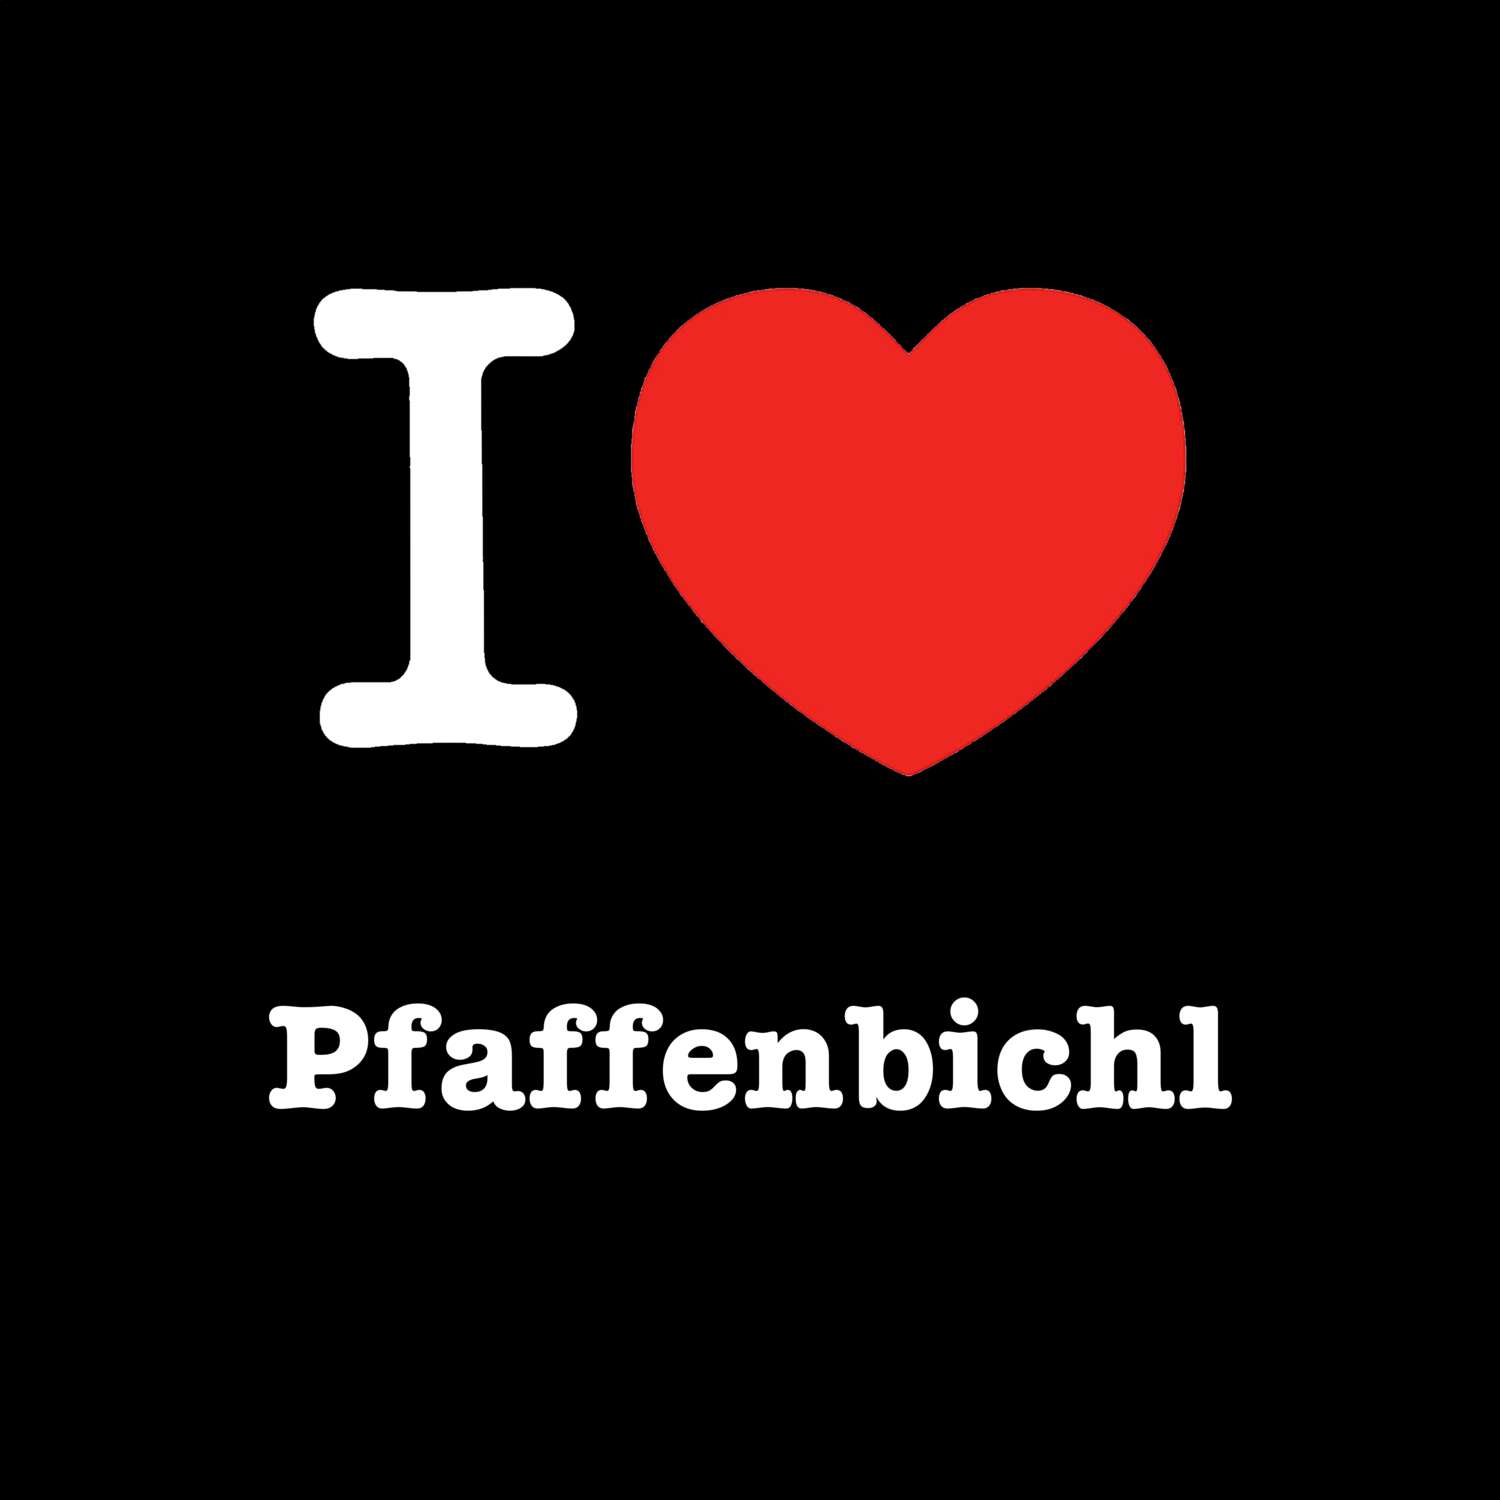 Pfaffenbichl T-Shirt »I love«